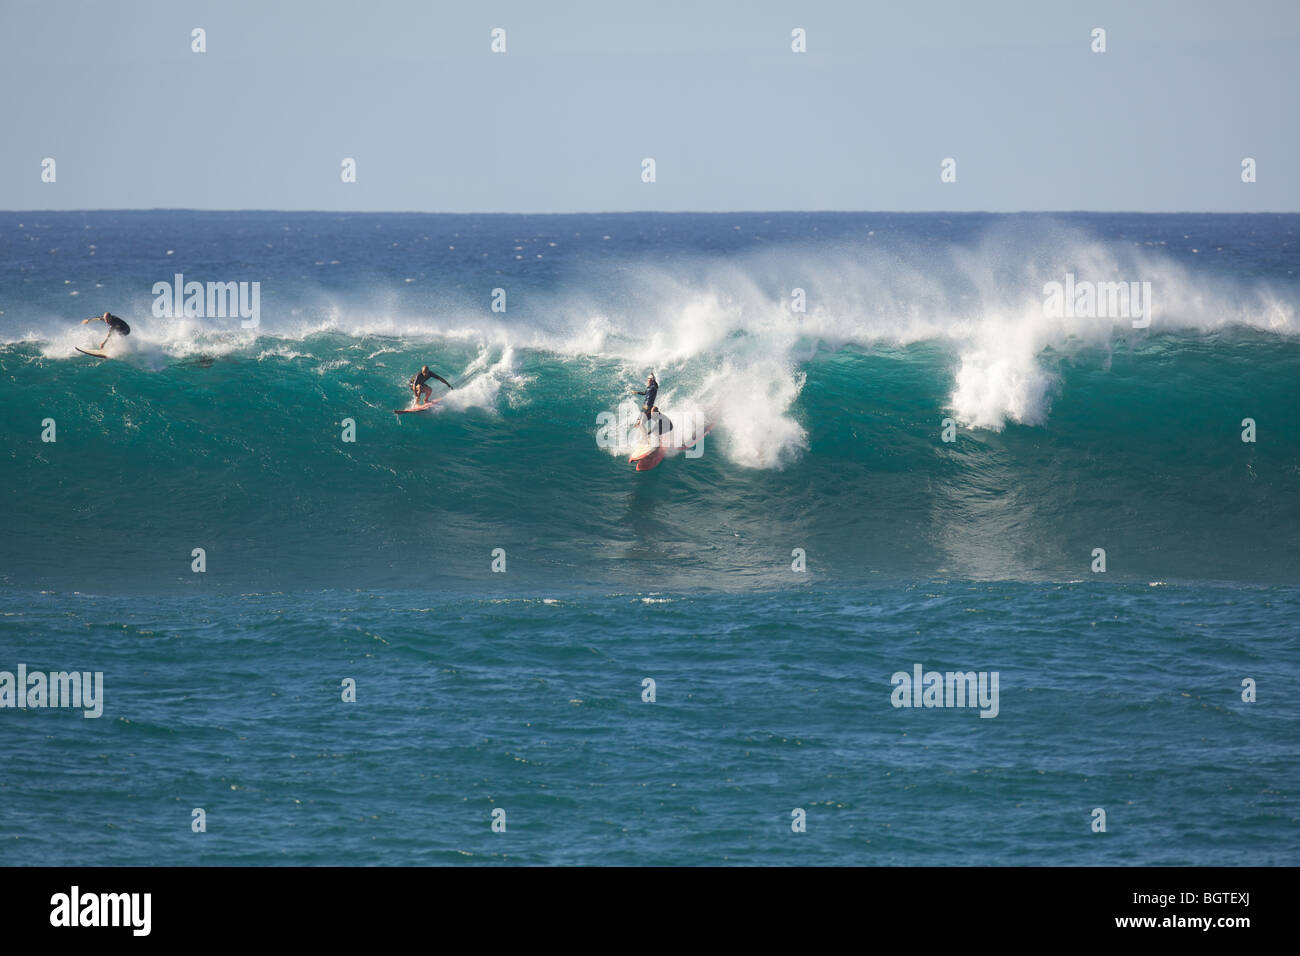 Two surfers collide on a large wave at Waimea Bay, Oahu, Hawaii Stock Photo